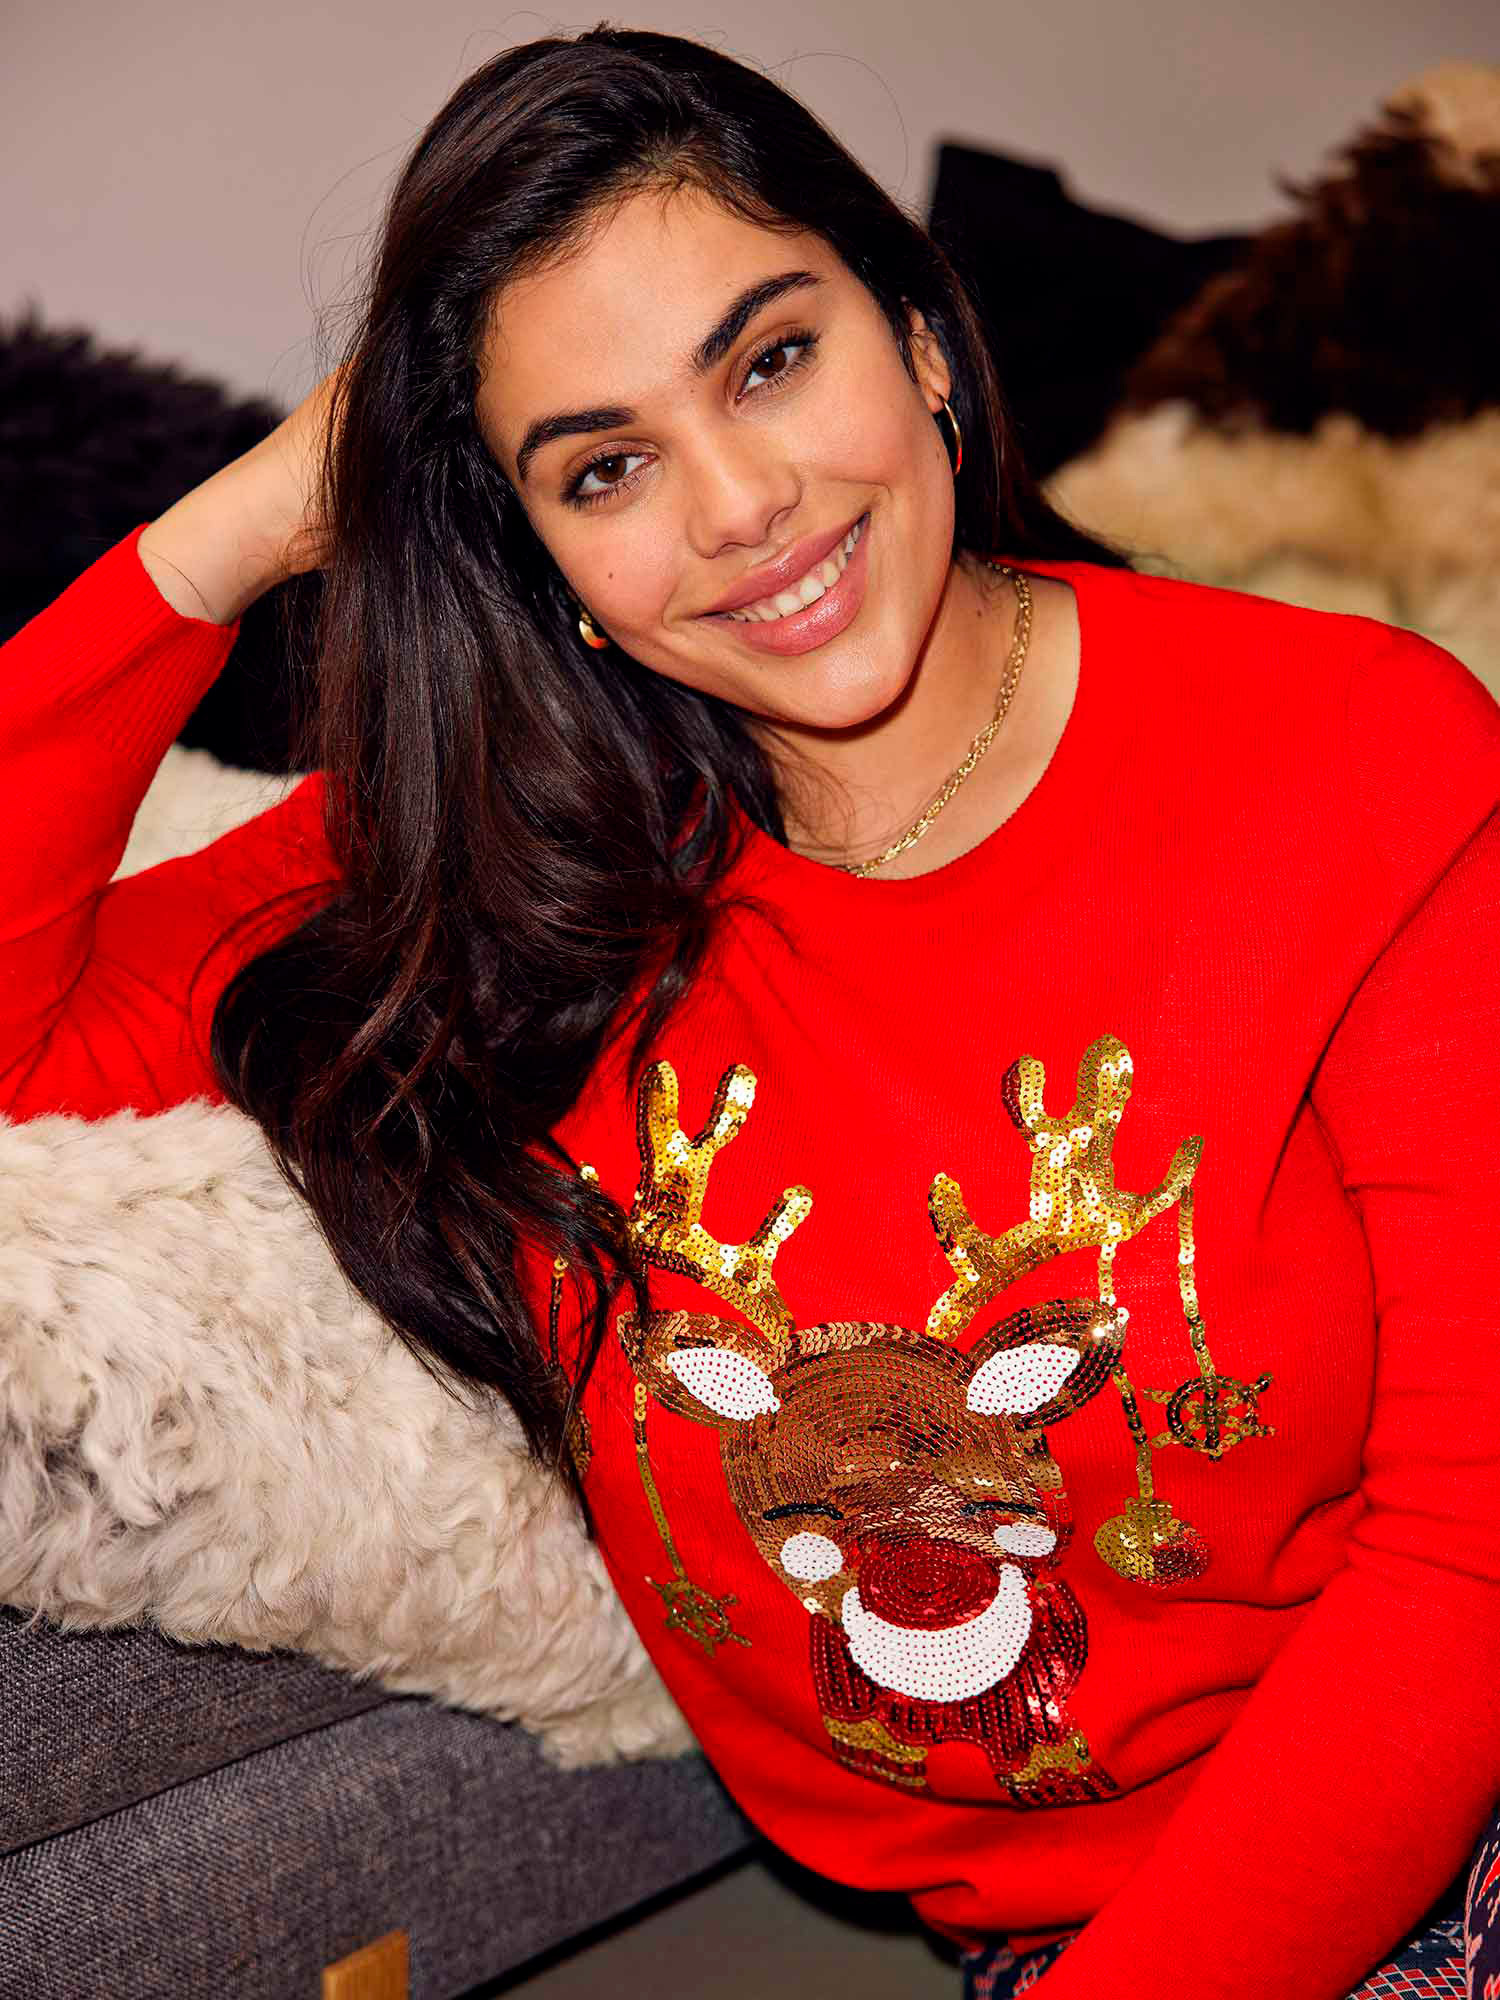 Car JINGLEBELL - Svart strikket genser med fint jule motiv